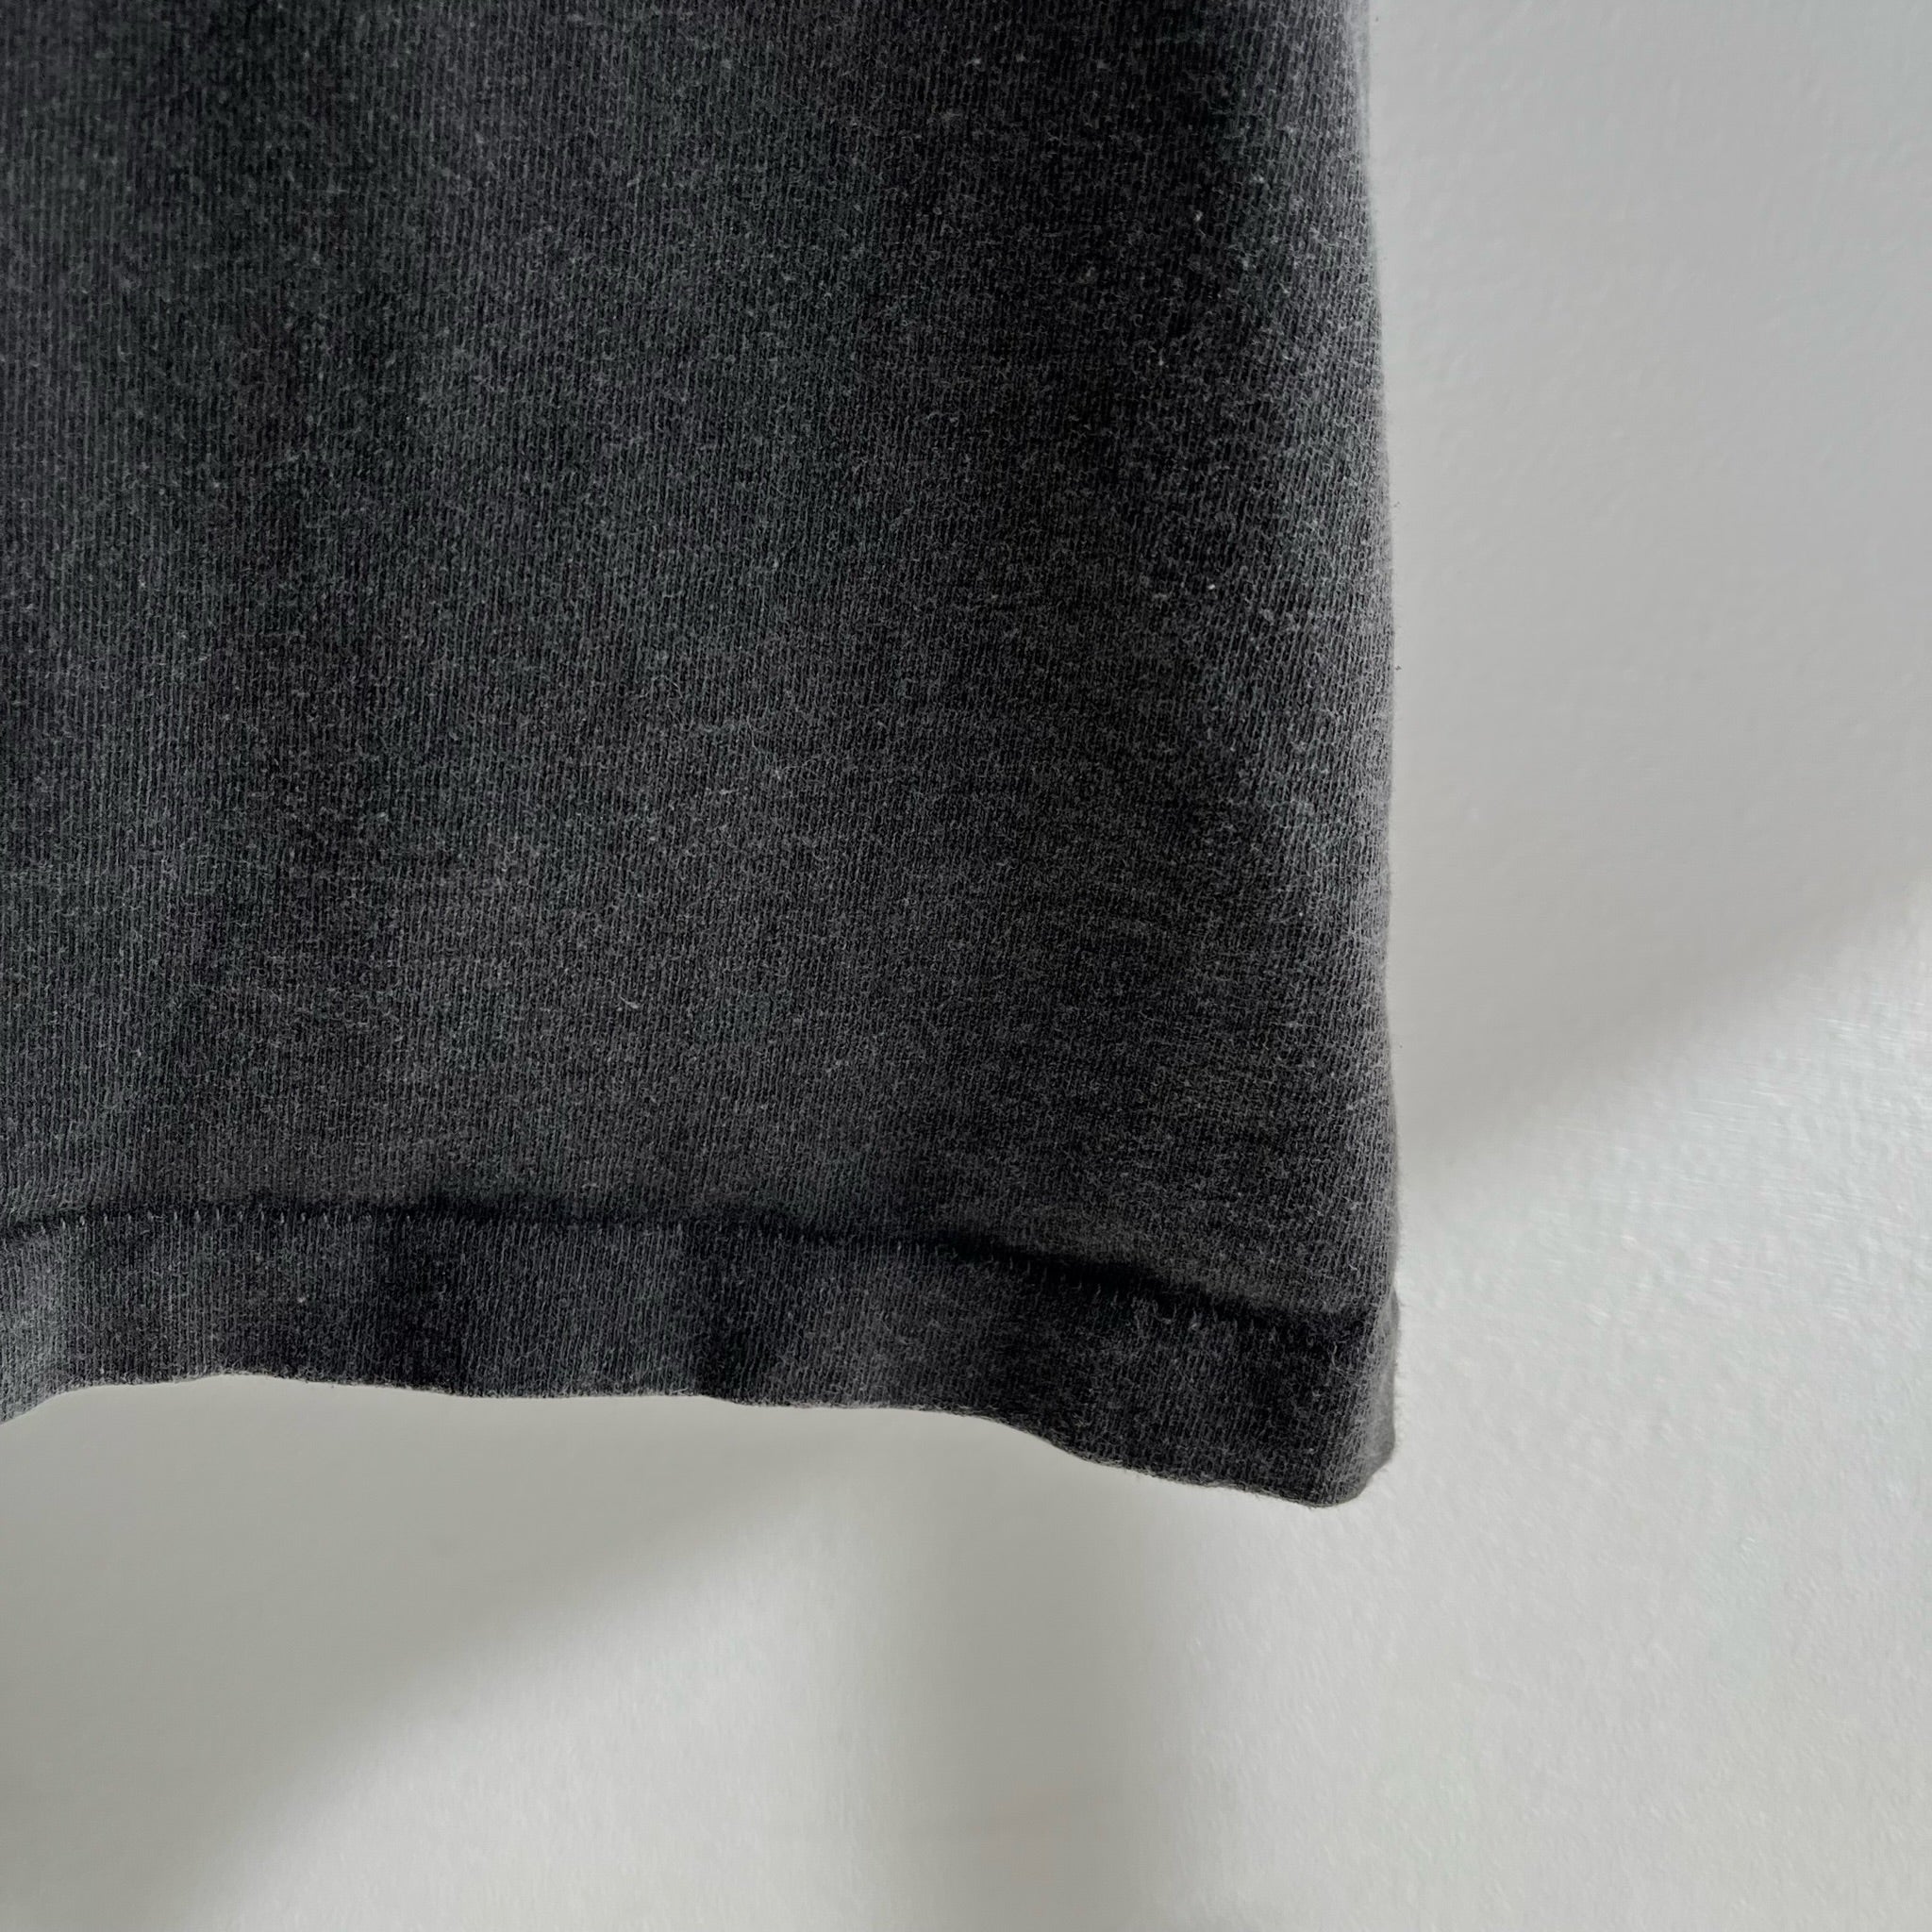 T-shirt oversize en coton noir/gris super délavé des années 1990